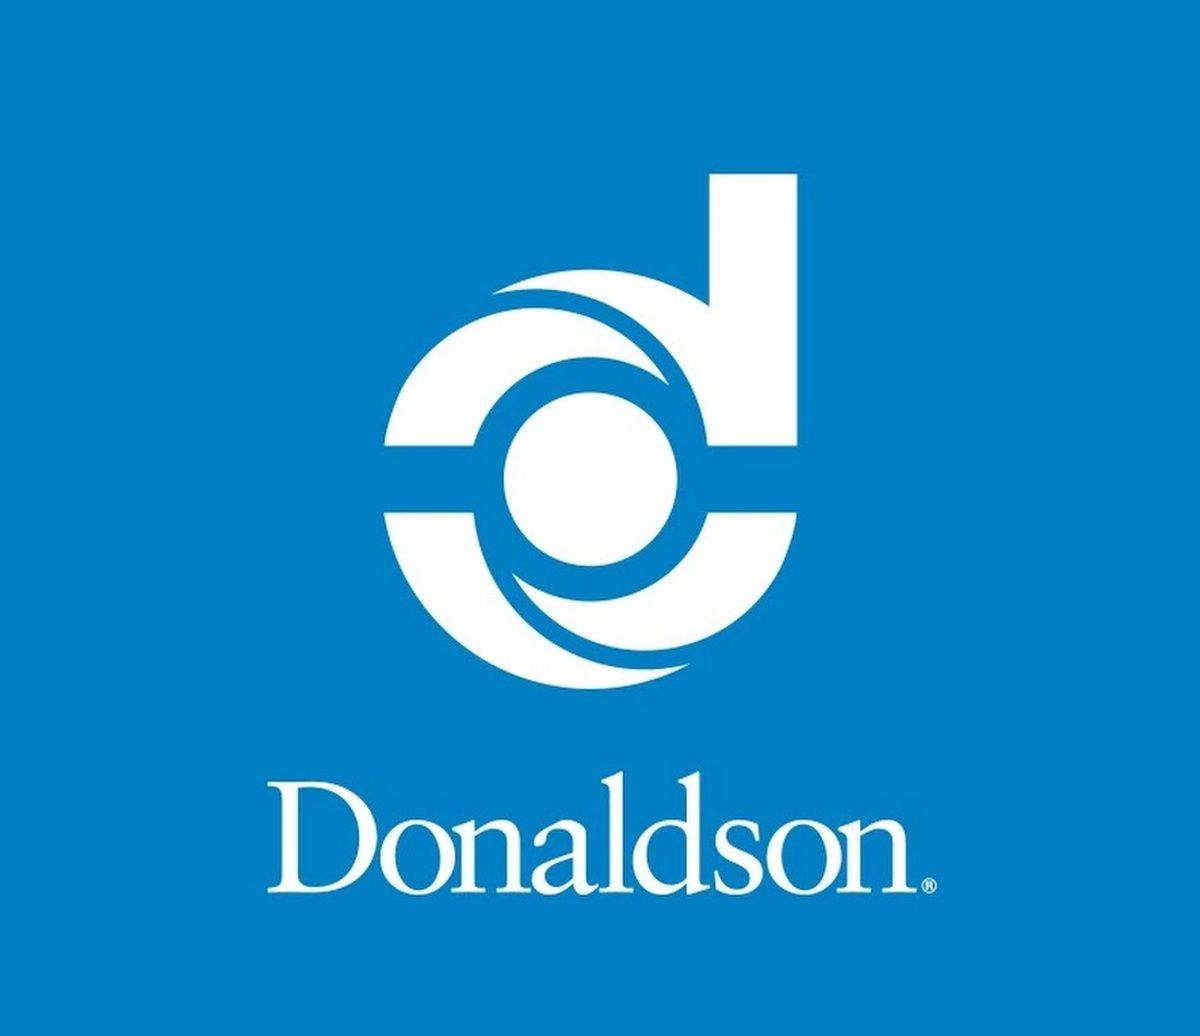 Donaldson's Logo - Donaldson Company details job cut plans